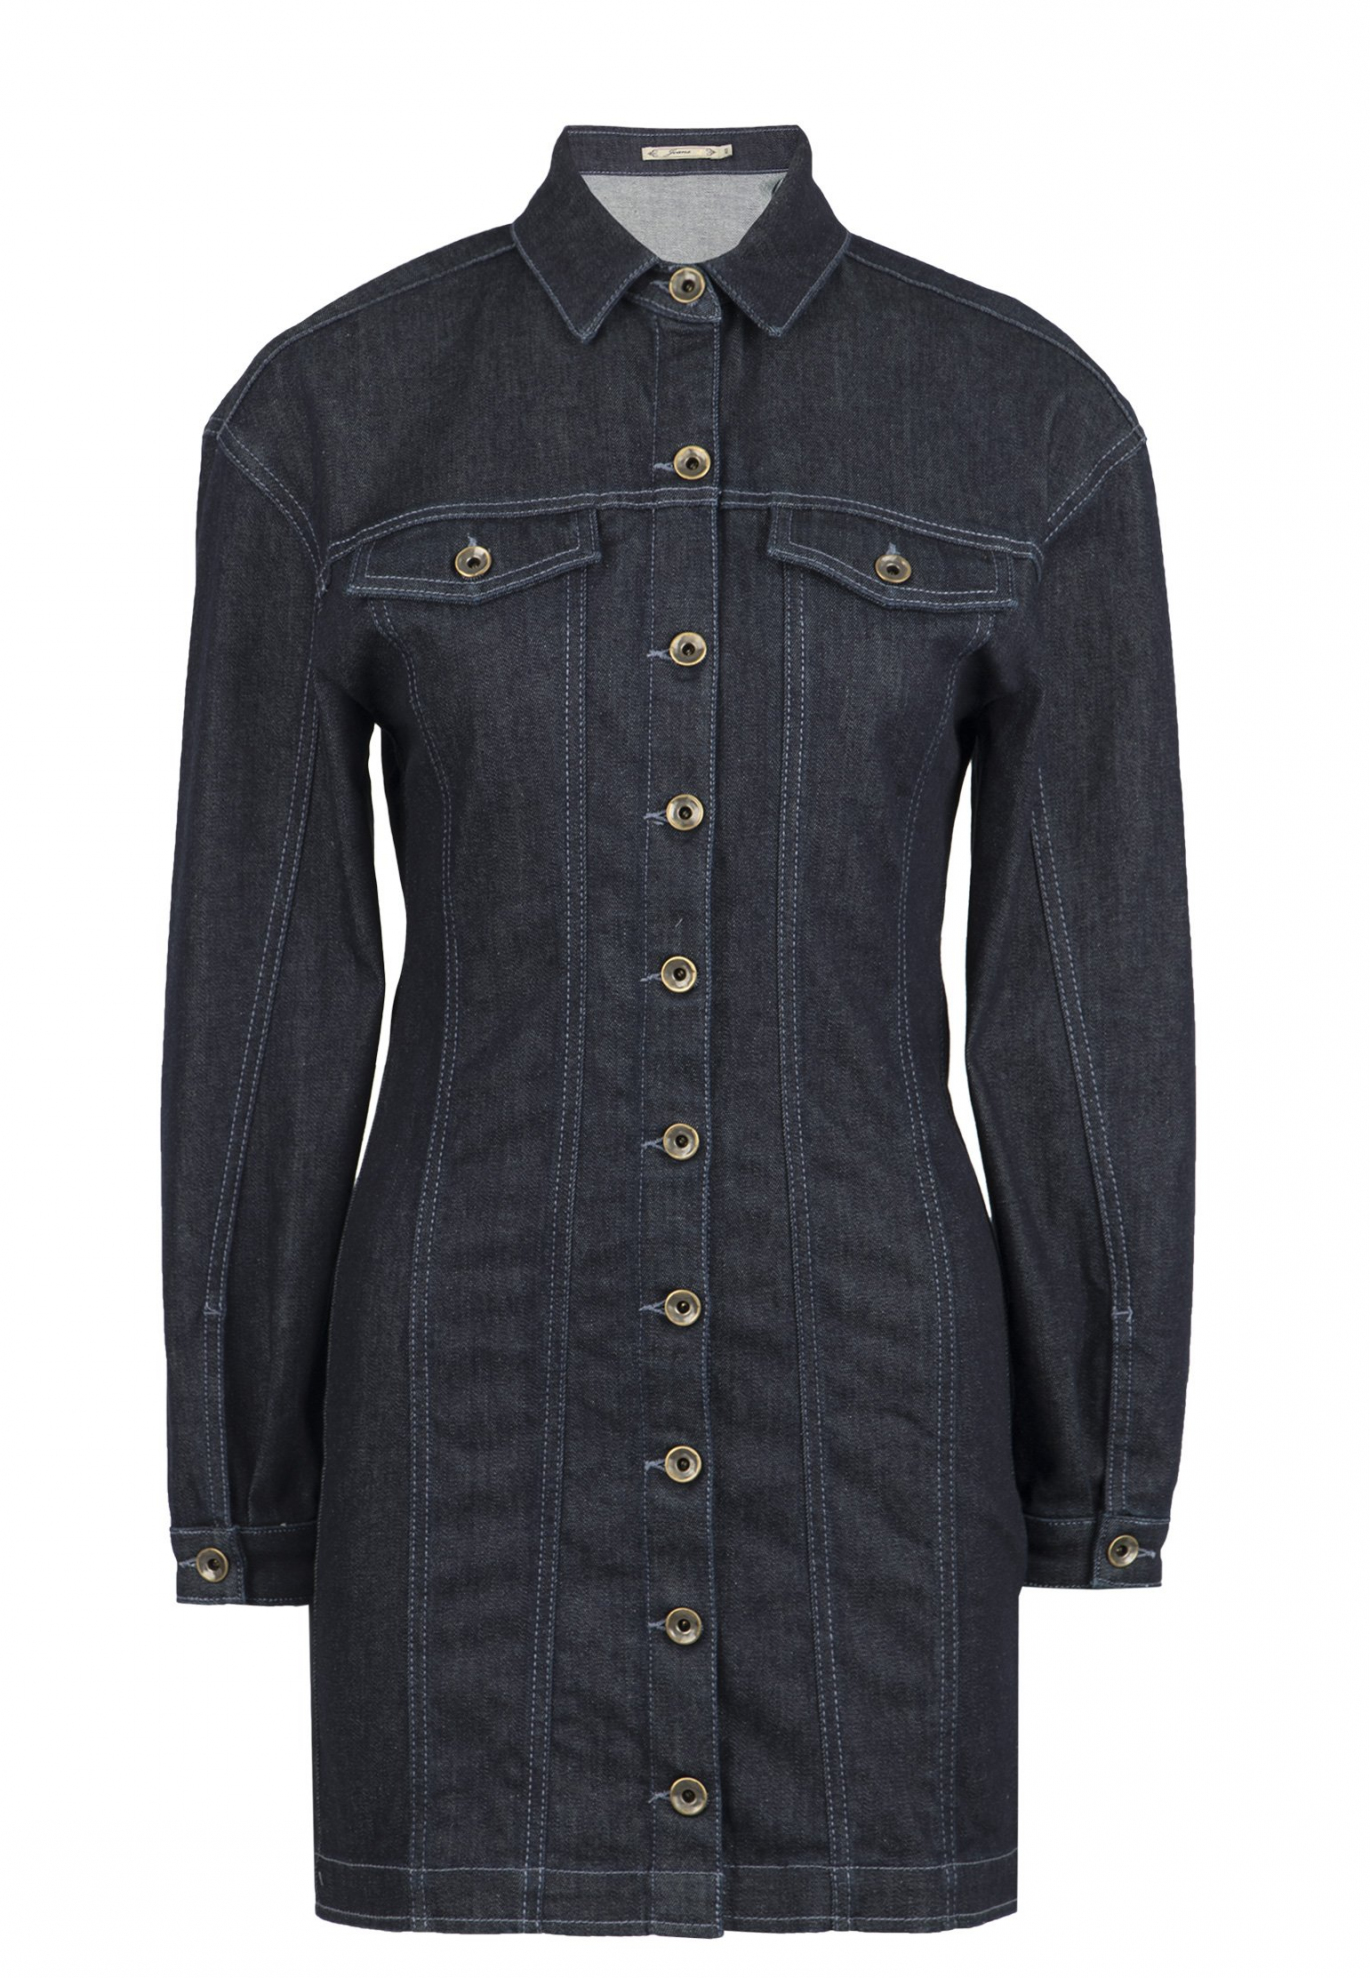 Джинсовые платья оригинальные и стильные наряды из джинсовой ткани (деним) - фото и цены